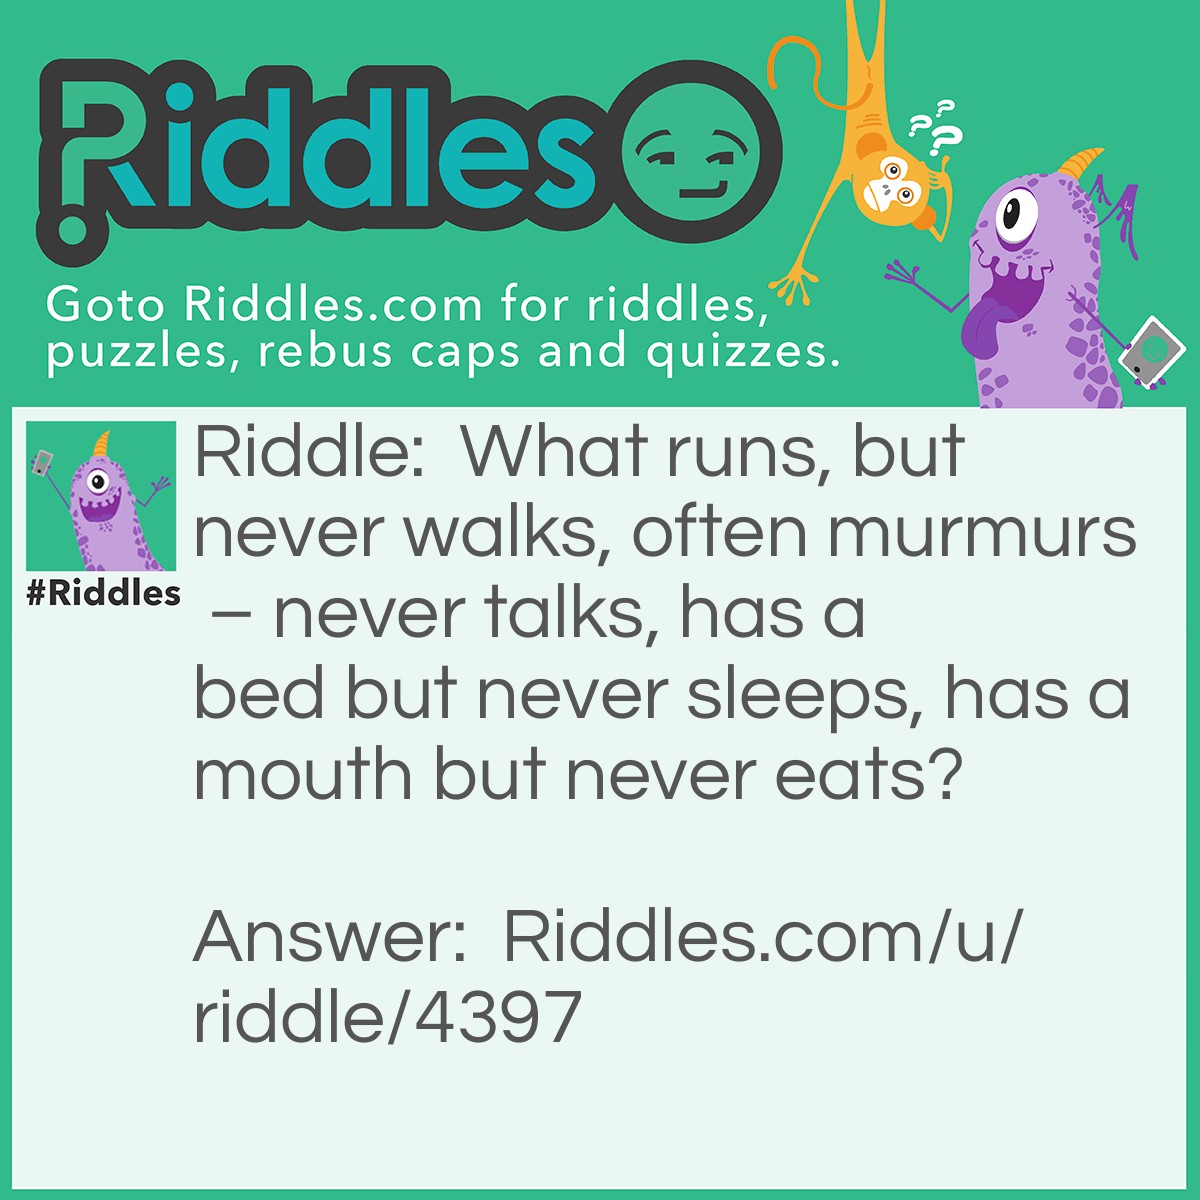 Riddle: What runs, but never walks, often murmurs - never talks, has a bed but never sleeps, has a mouth but never eats? Answer: A river.